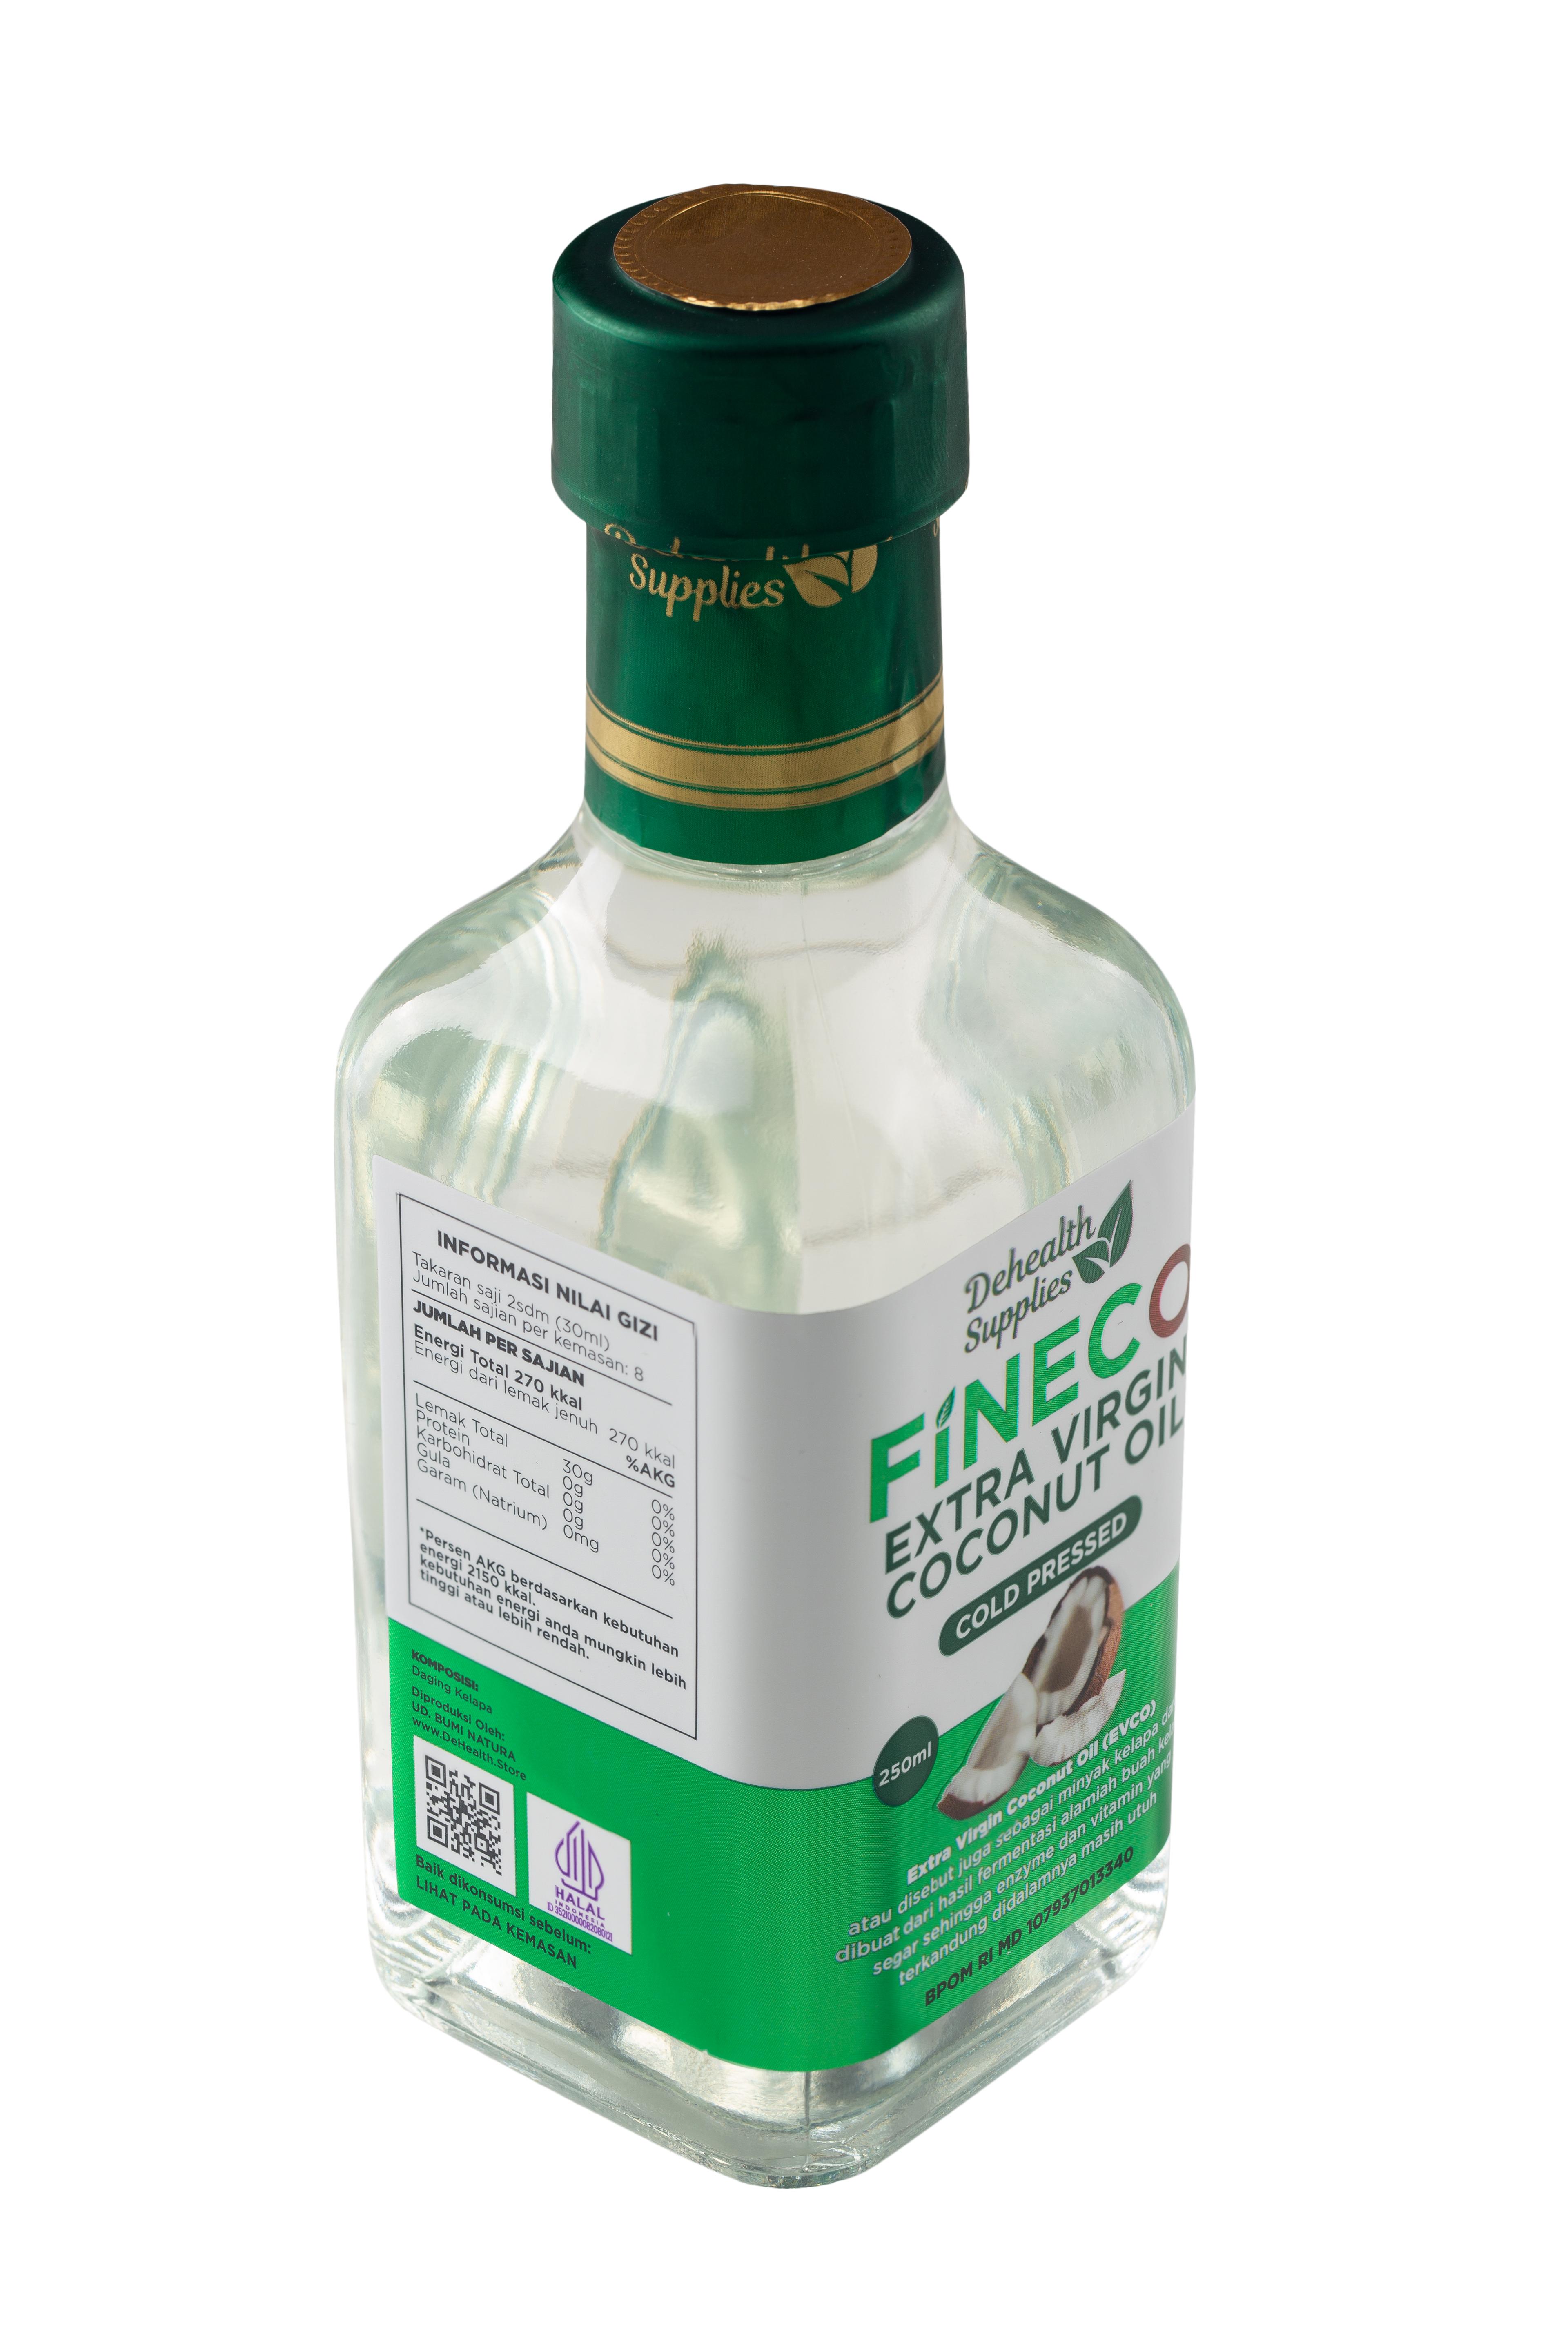 Dehealth Supplies Fineco Extra Virgin Coconut Oil Inter Buana Mandiri